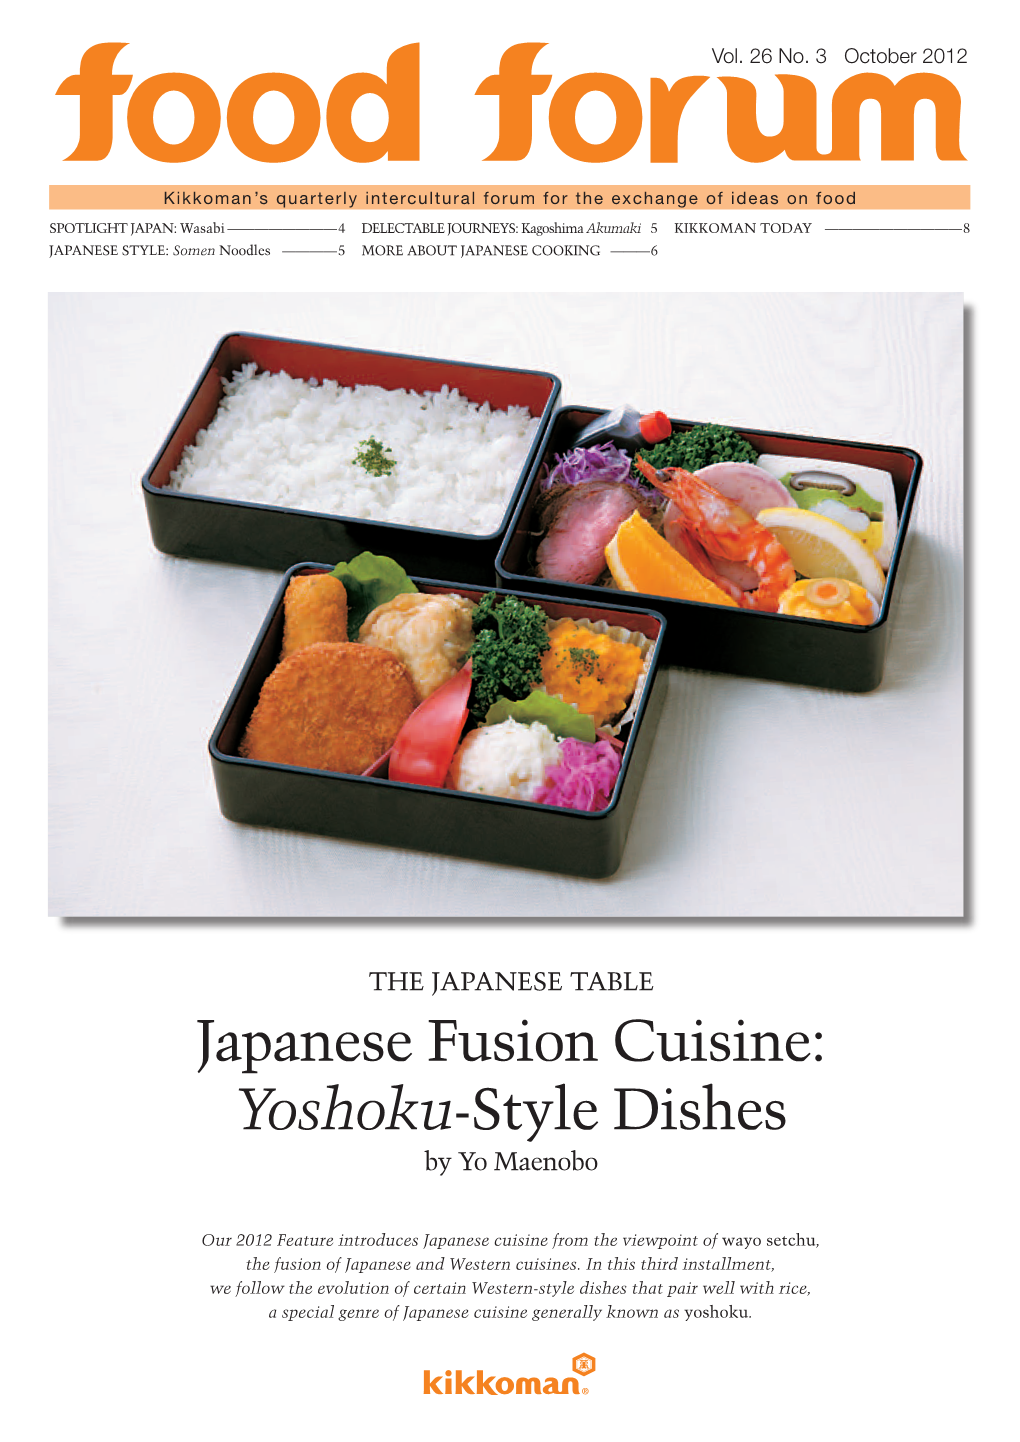 Japanese Fusion Cuisine: Yoshoku-Style Dishes by Yo Maenobo